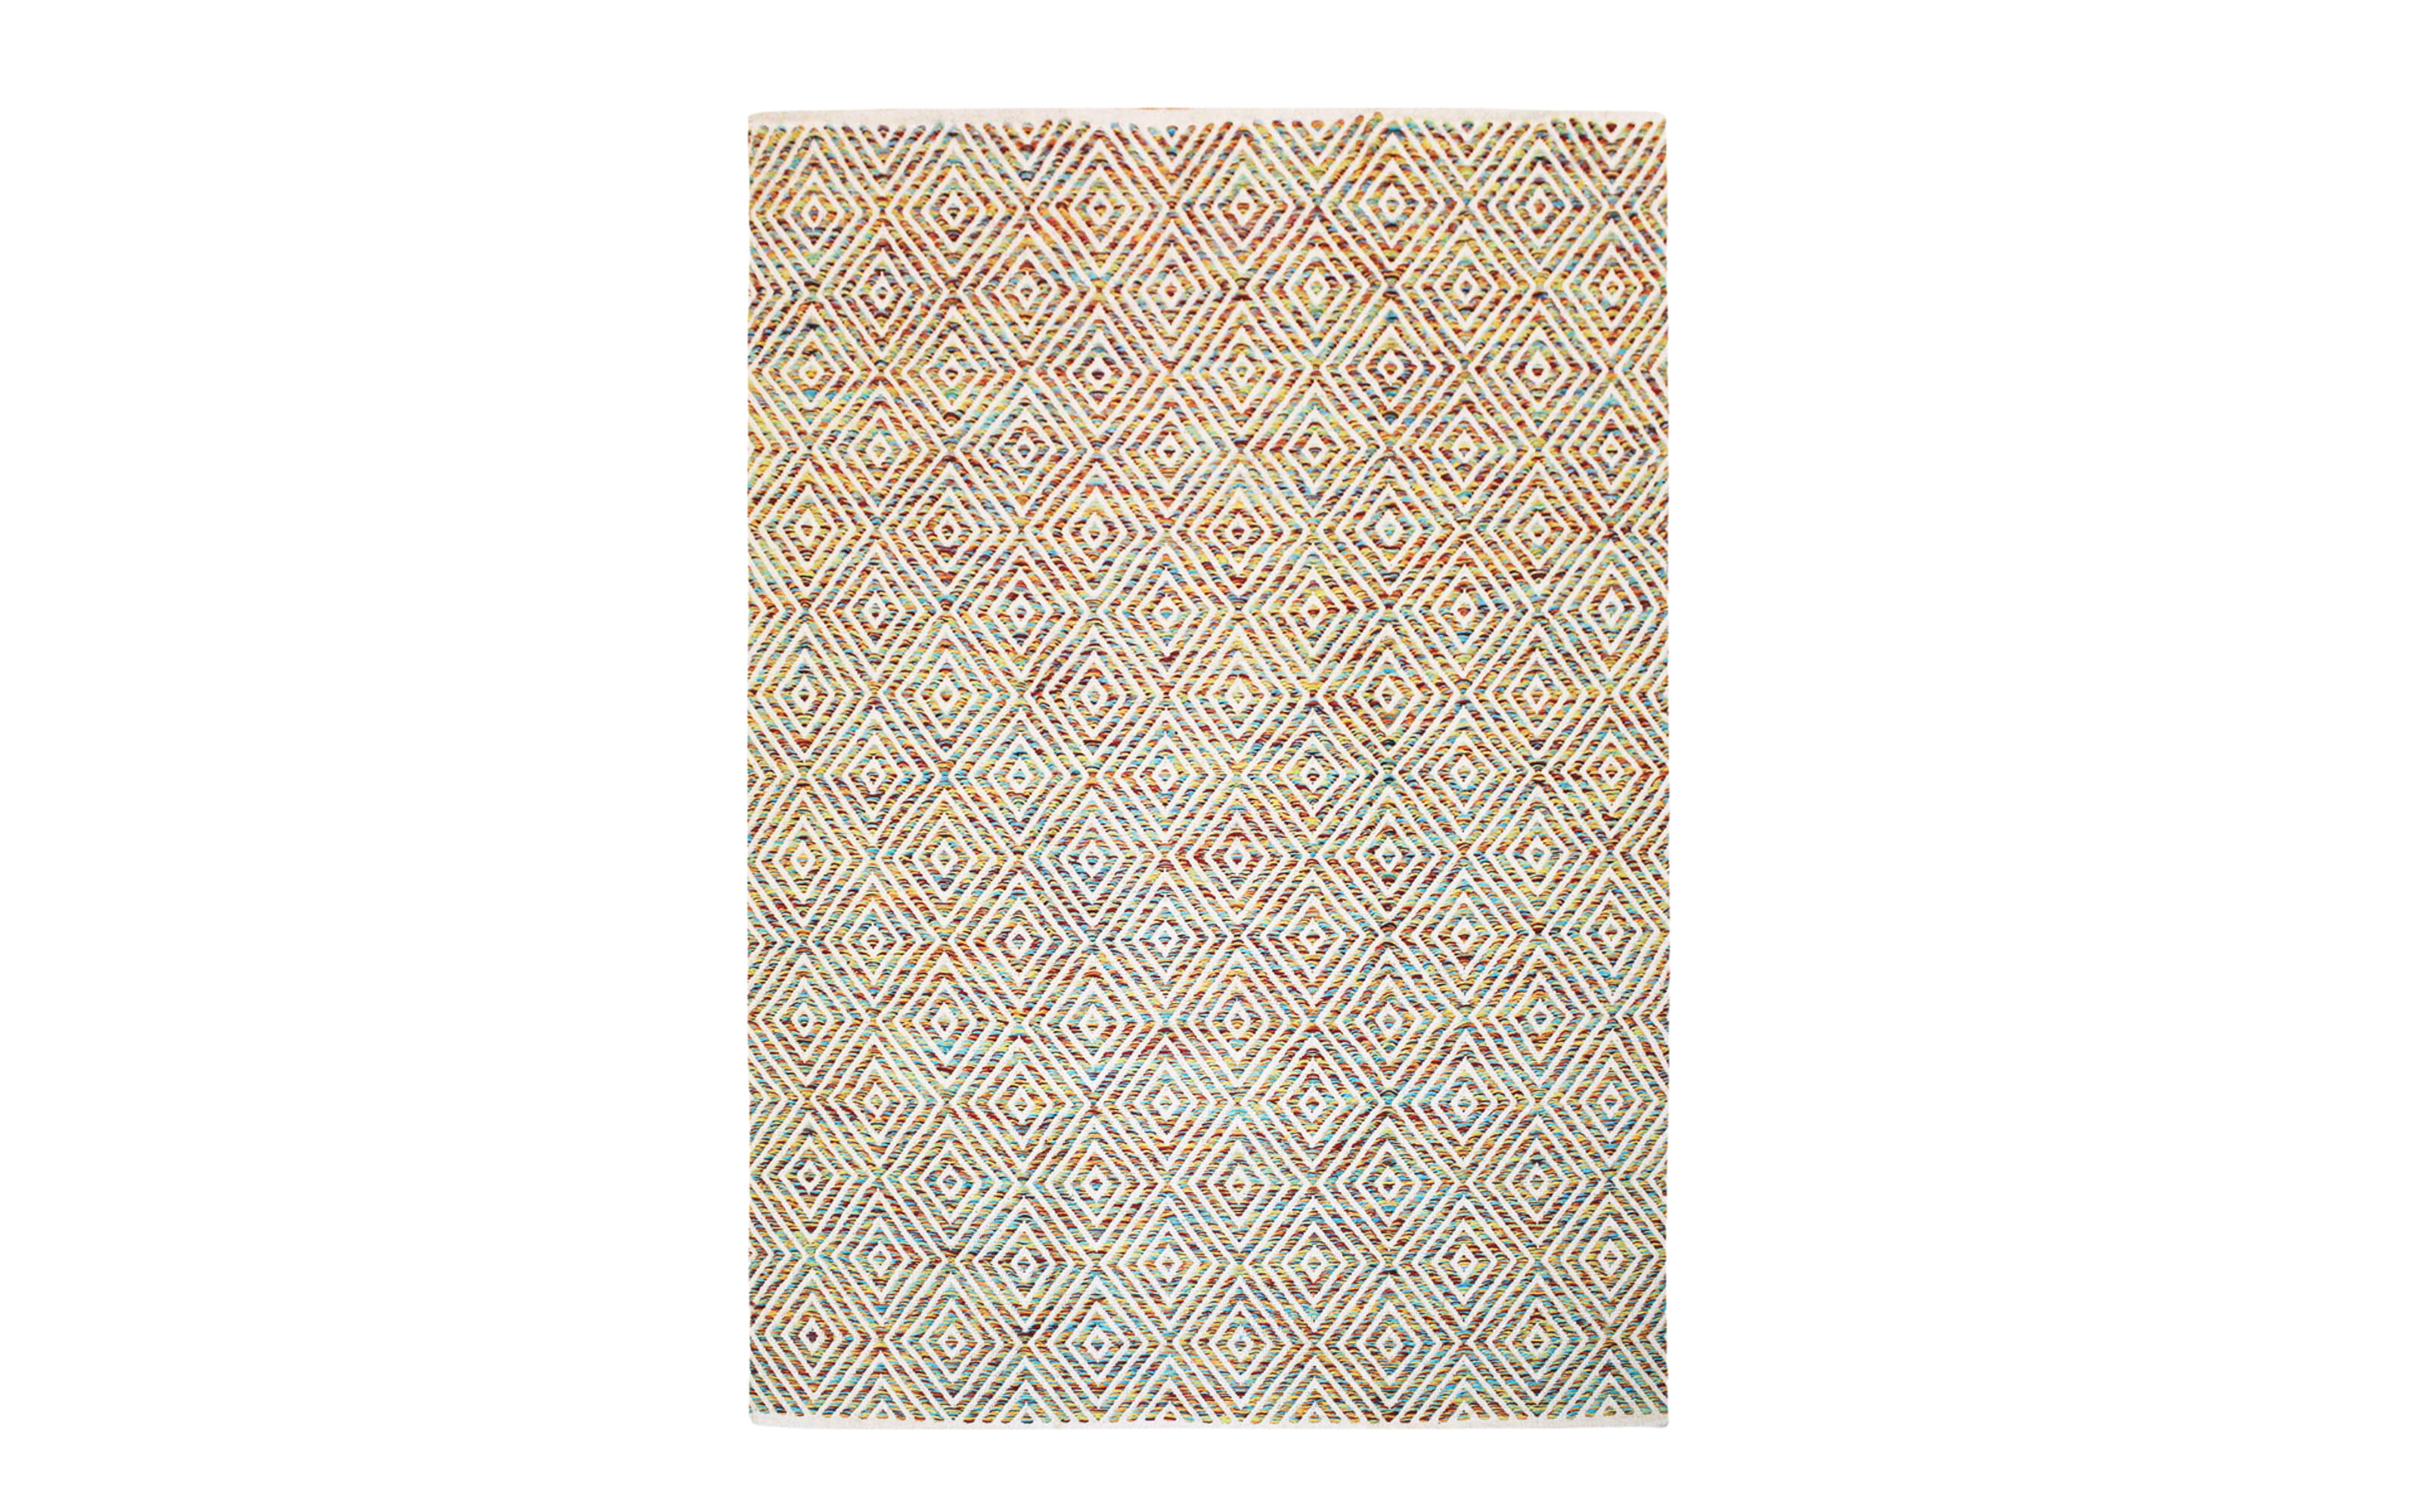 Teppich Aperitif 310 in multi, 160 x 230 cm